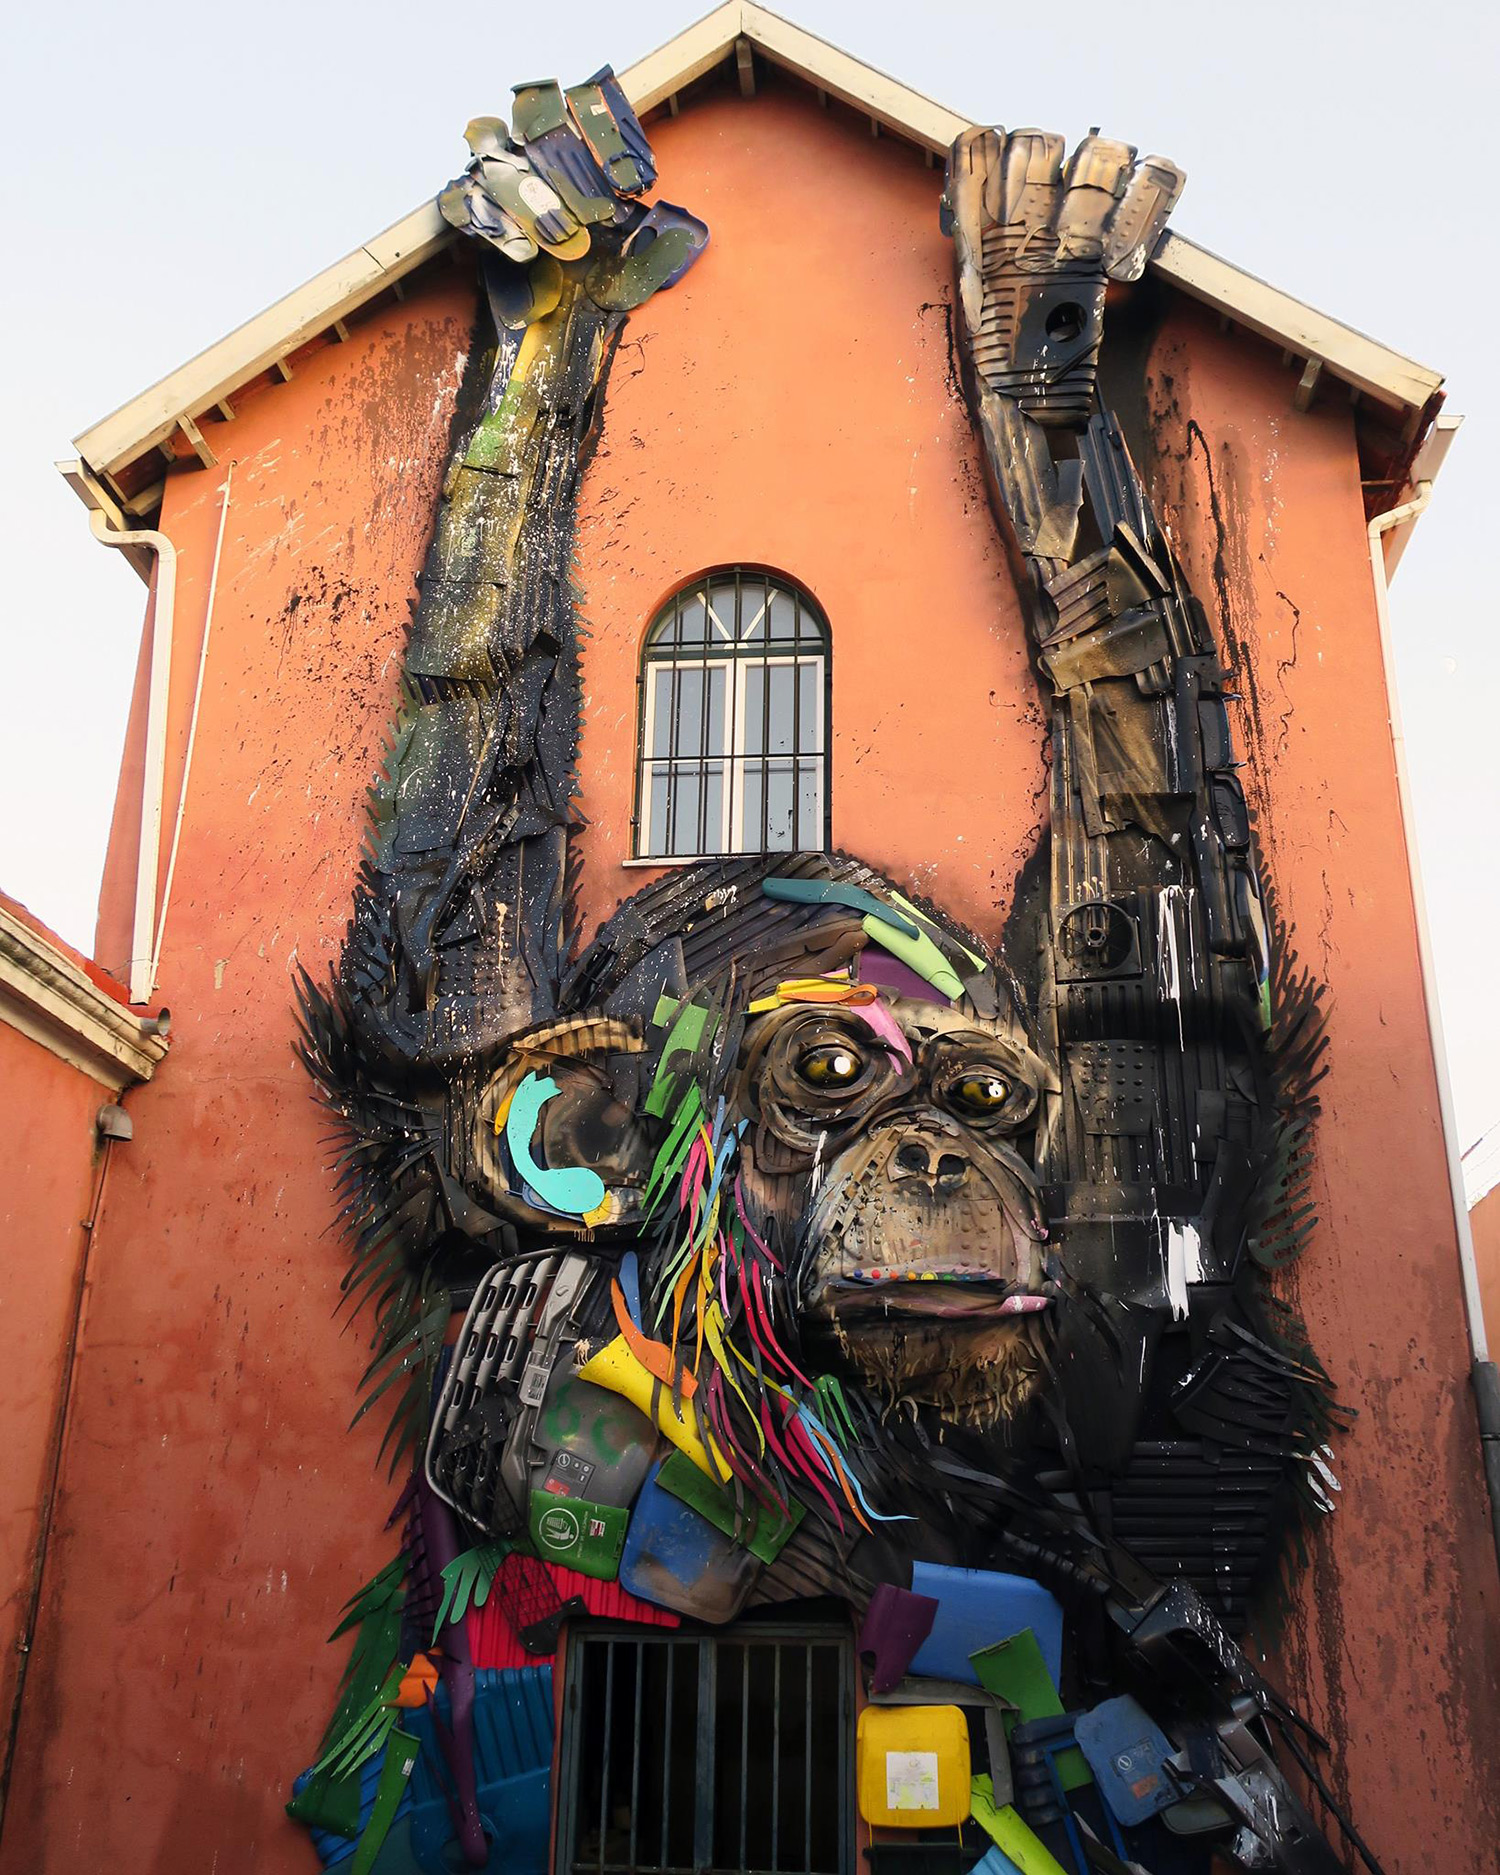 utcai művészet szobor szemét szemét szobor érdekes street art